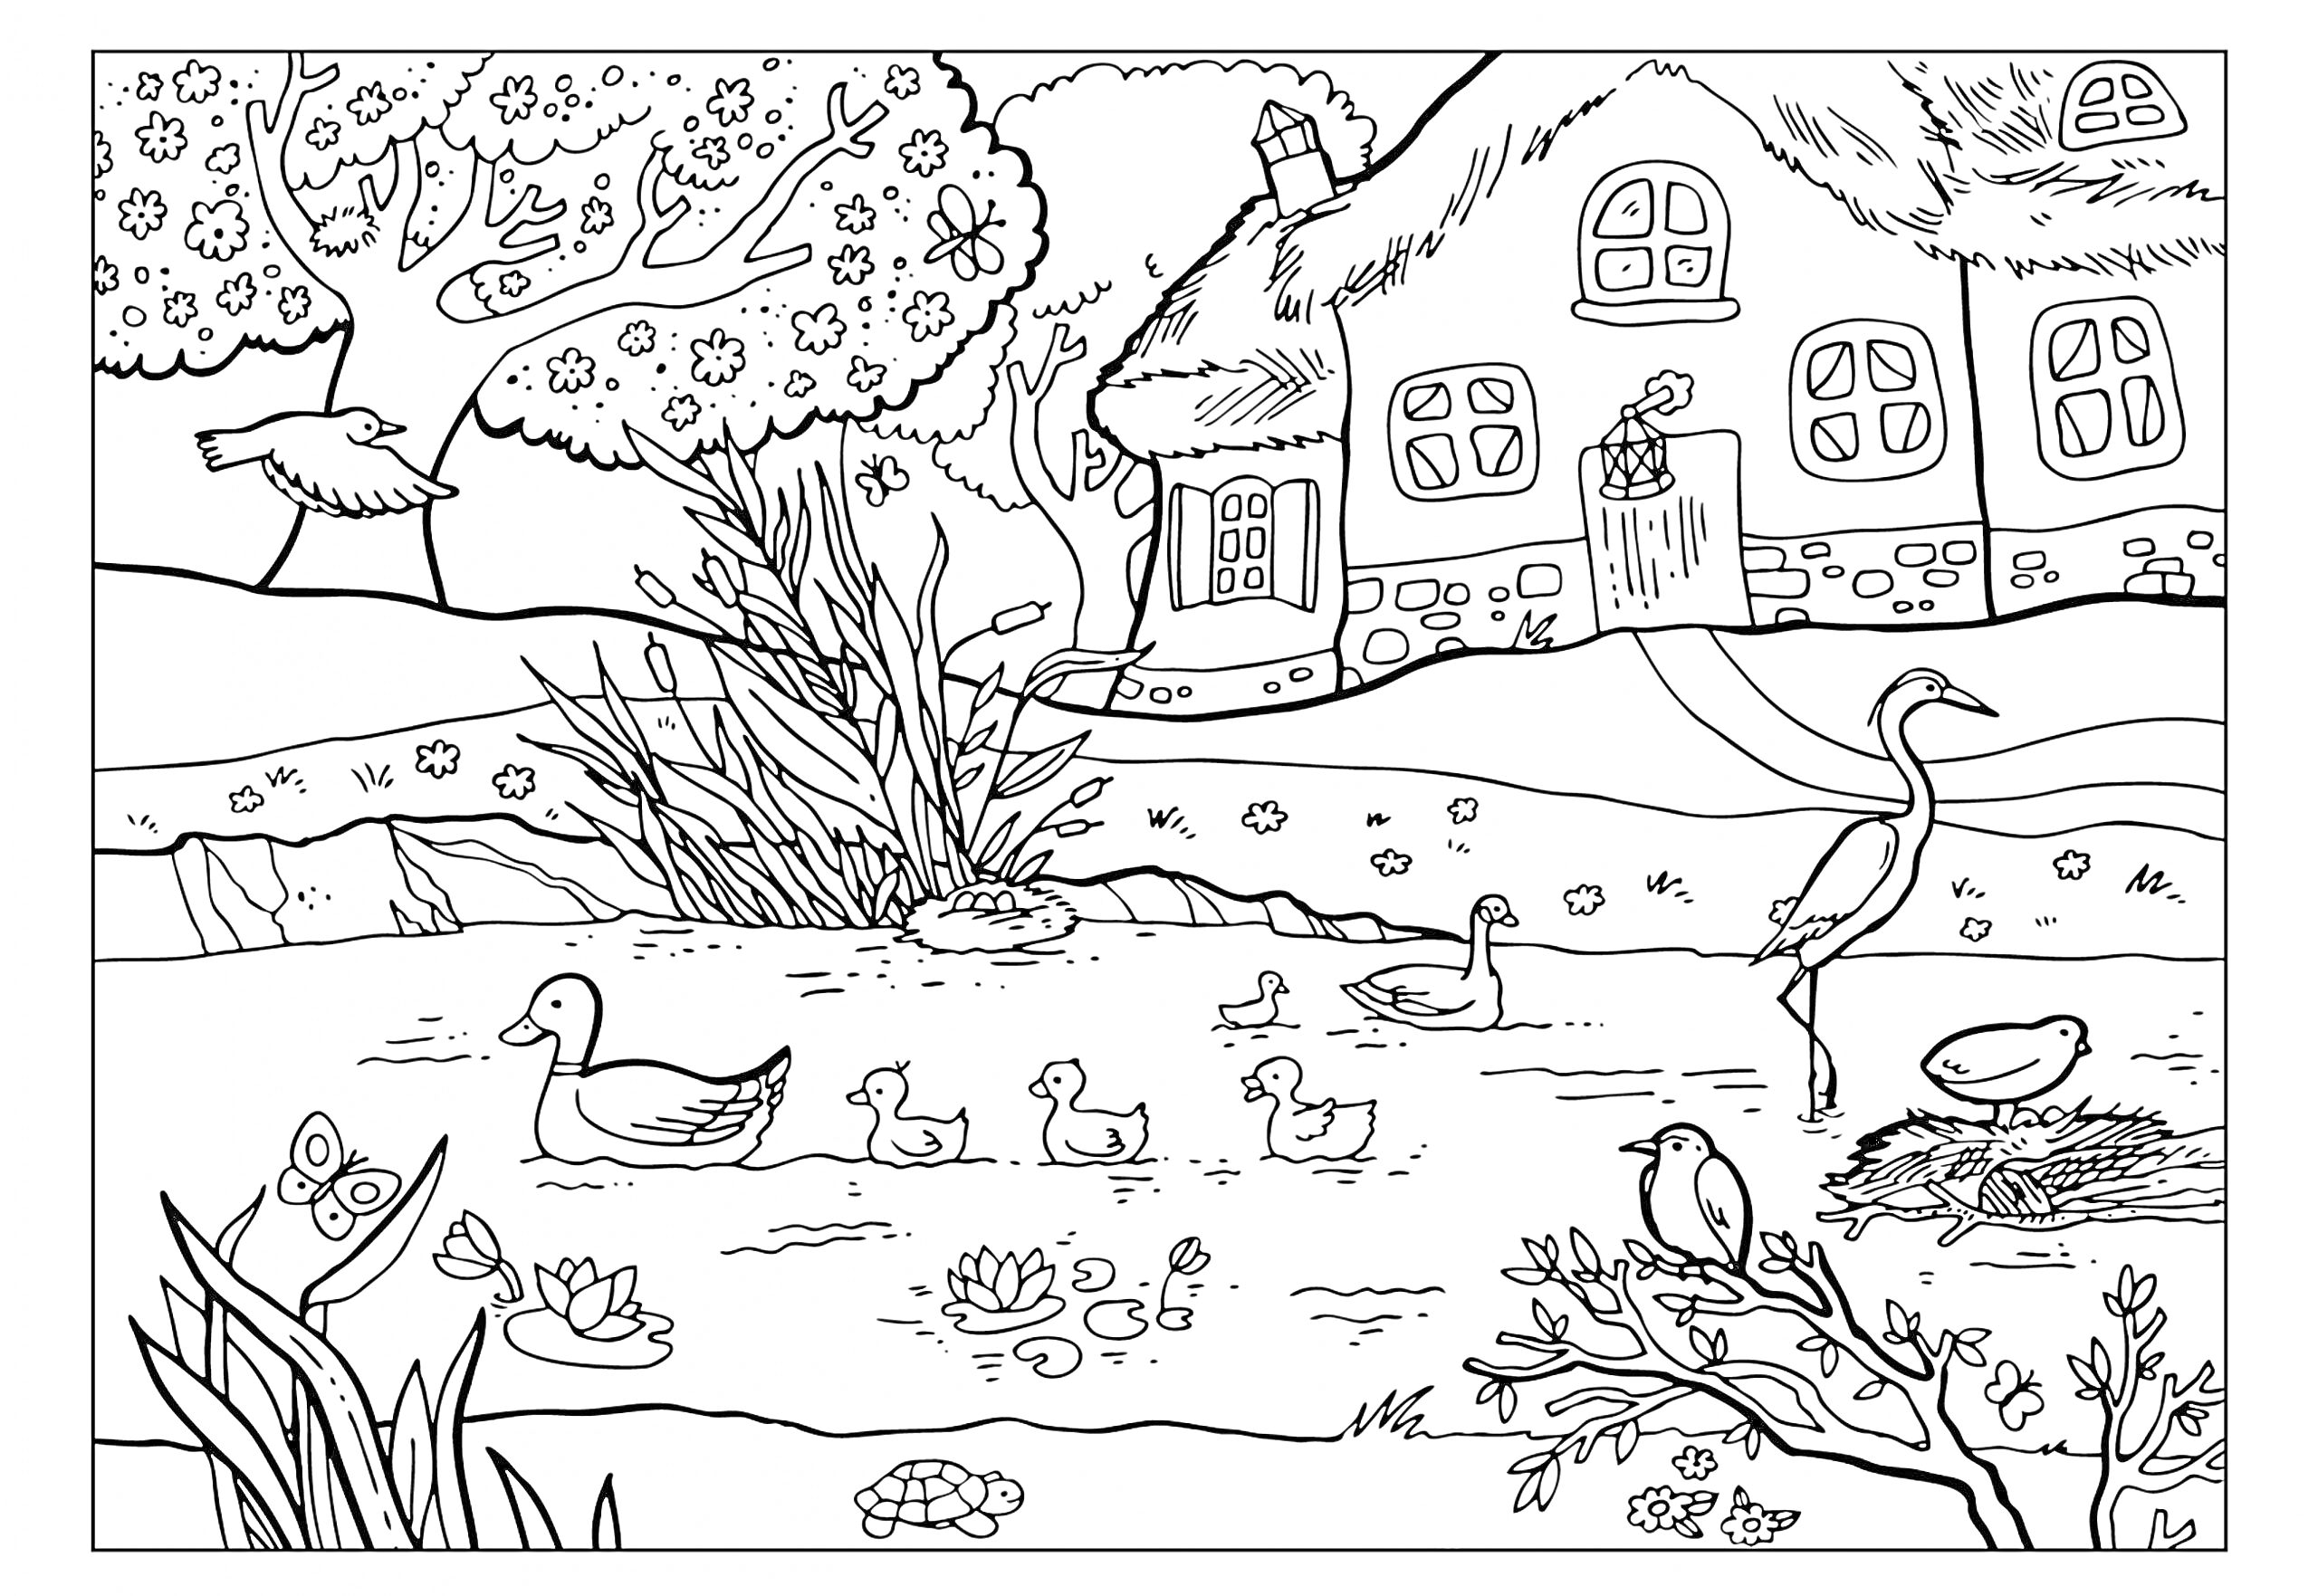 Пруд у деревенского дома с утками, гусем, птицей в гнезде на дереве, домом с соломенной крышей, ветряной мельницей, деревьями, цветами и камышами